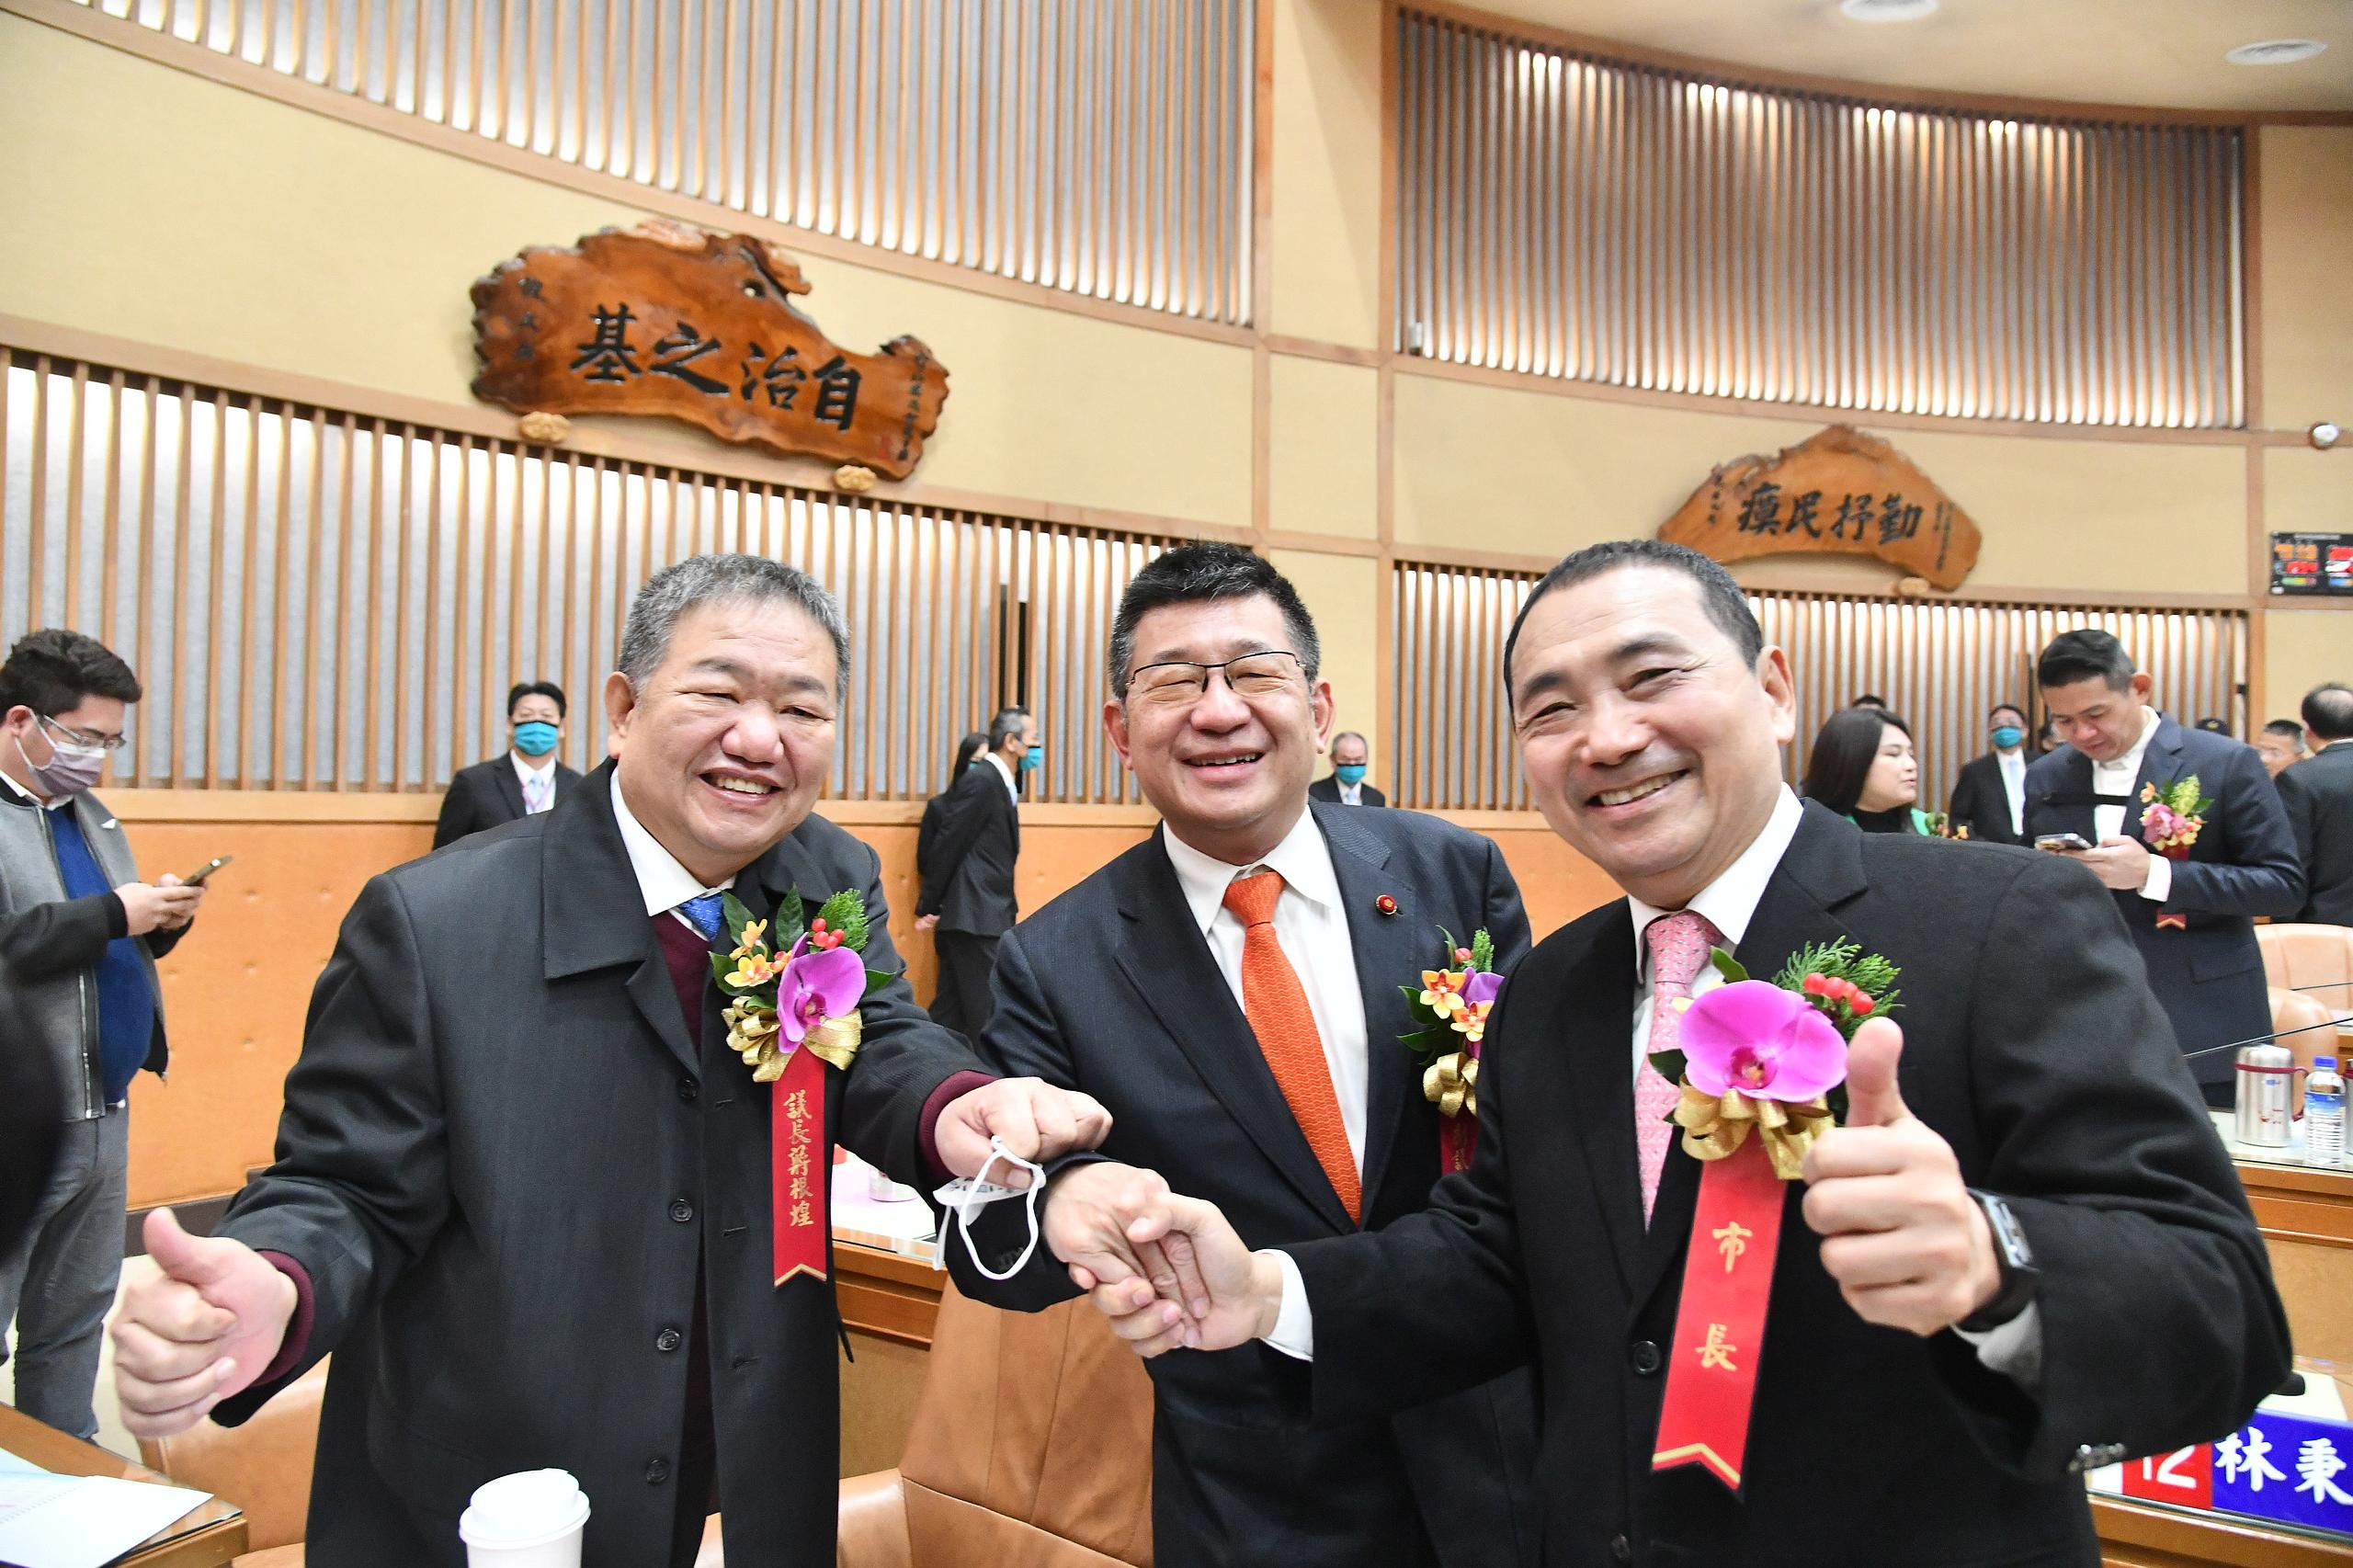 新北市議會今(25)日進行第四屆議長及副議長選舉，結果由蔣根煌及陳鴻源當選正、副議長。